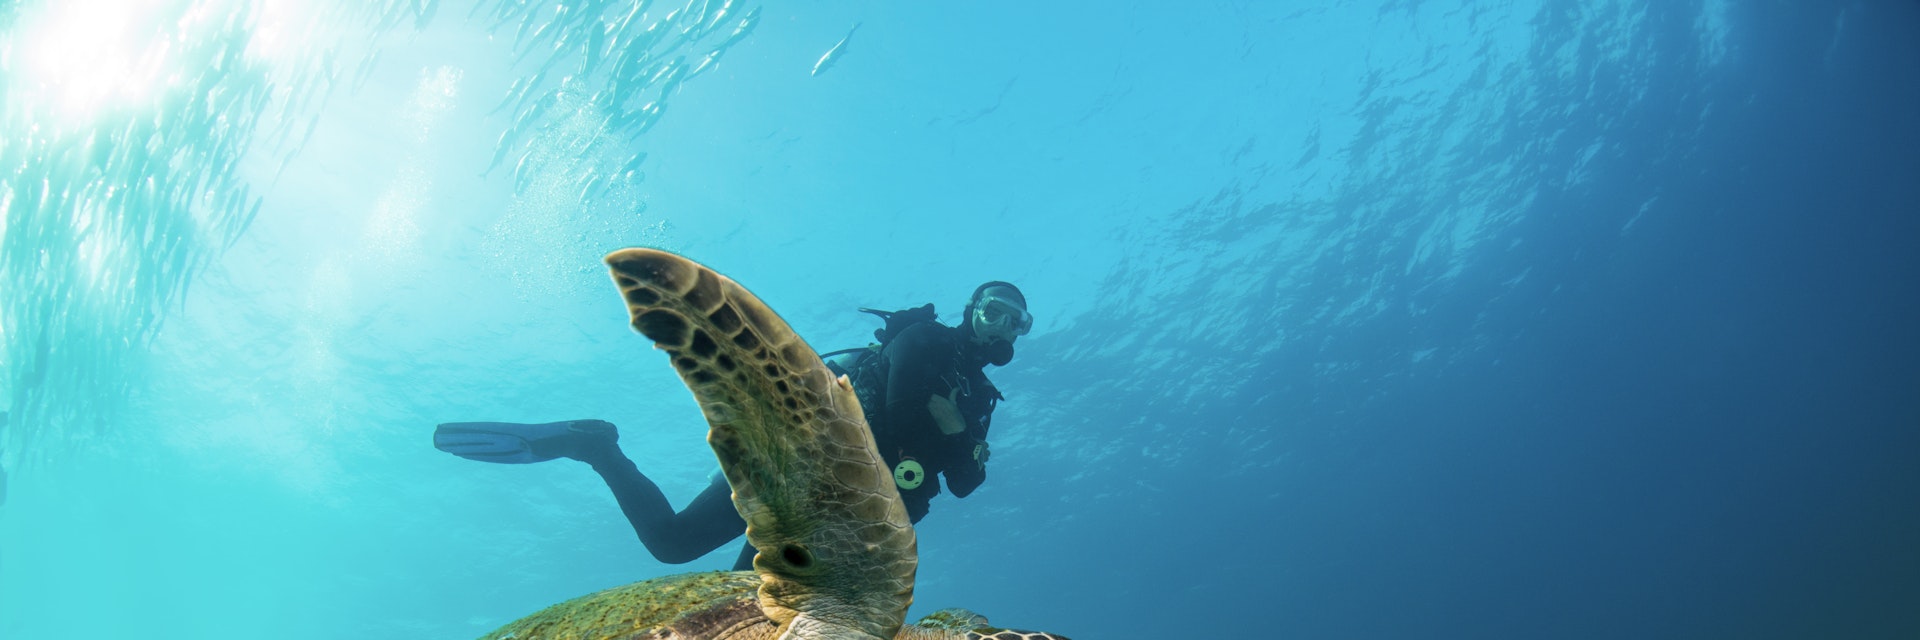 Green sea turtle swimming with a scuba diver